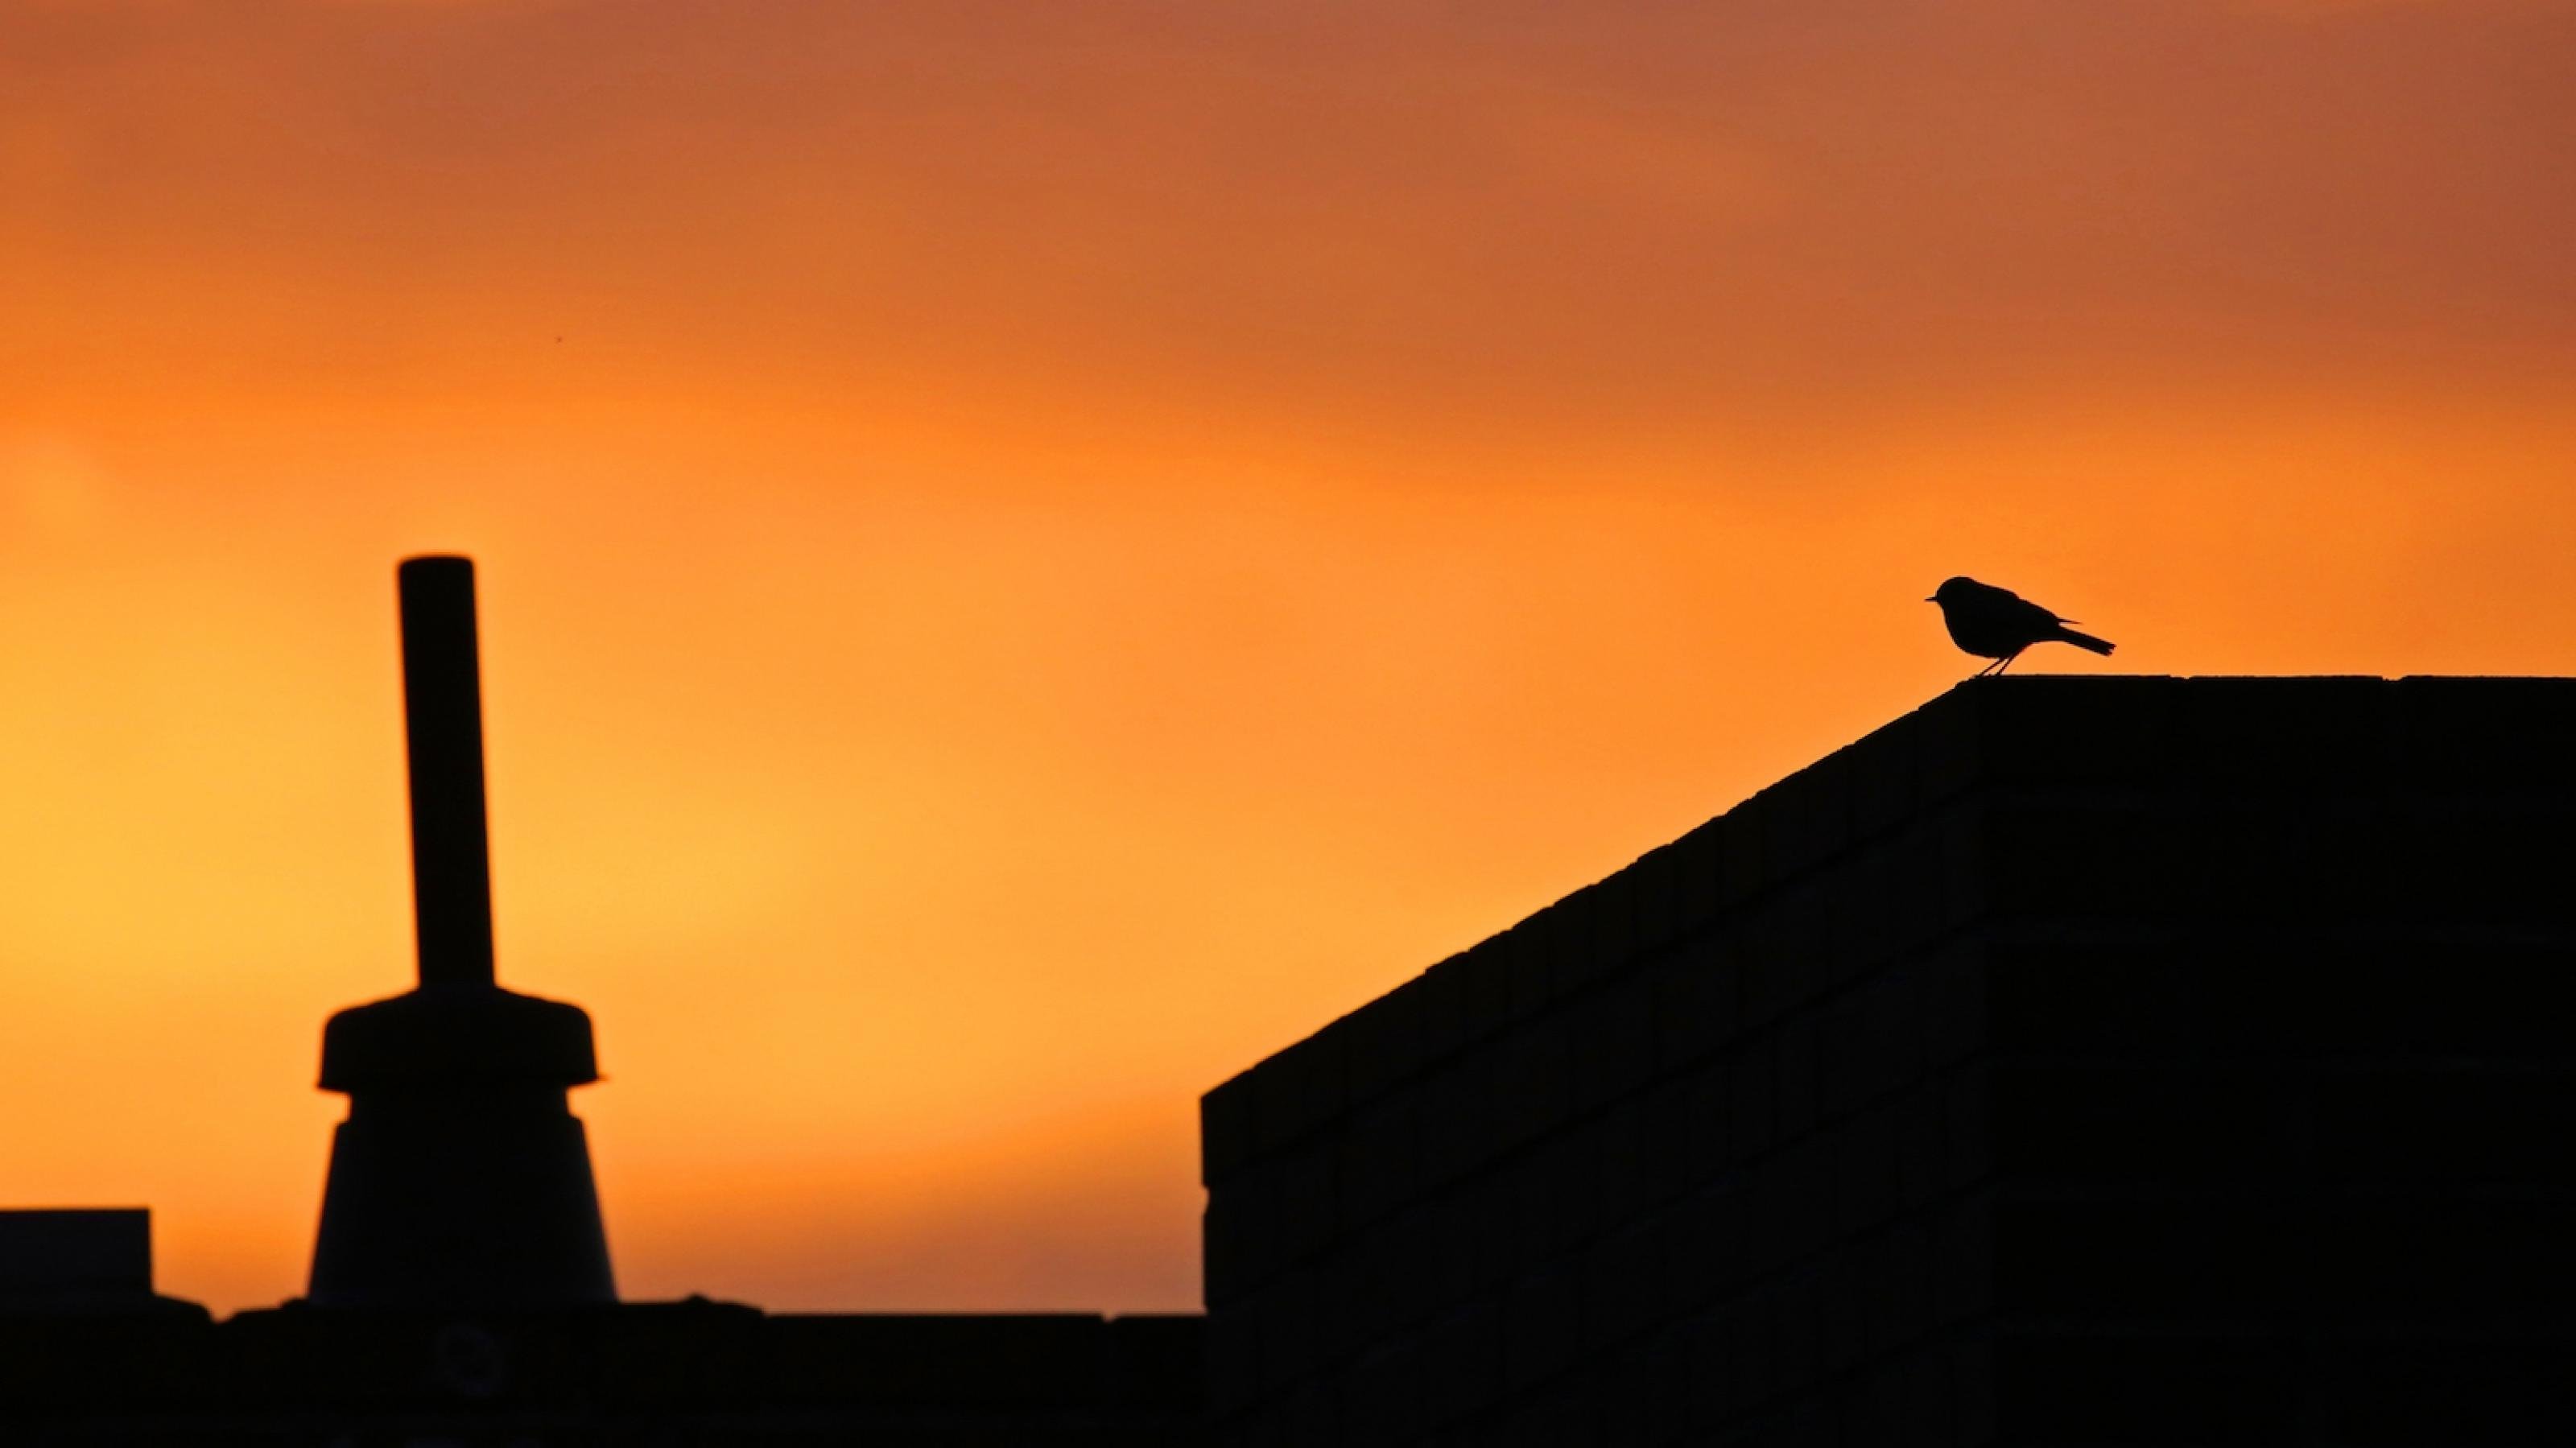 Bild im untergehenden Sonnenlicht, man sieht ein Dach auf dem ein Vogel (Hausrotschwanz) sitzt.